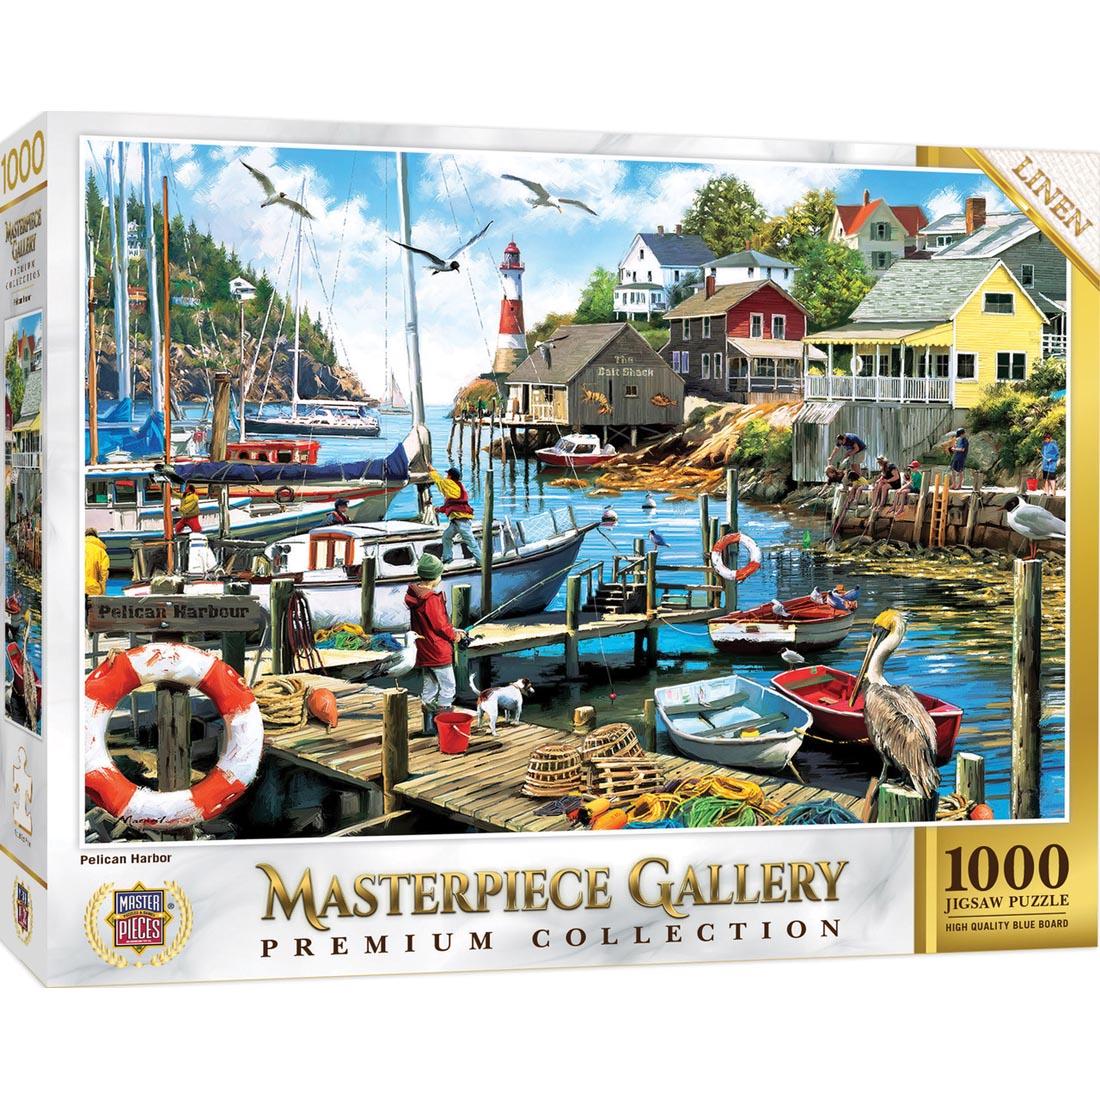 MasterPiece Gallery Series Pelican Harbor 1000-Piece Puzzle by MasterPieces